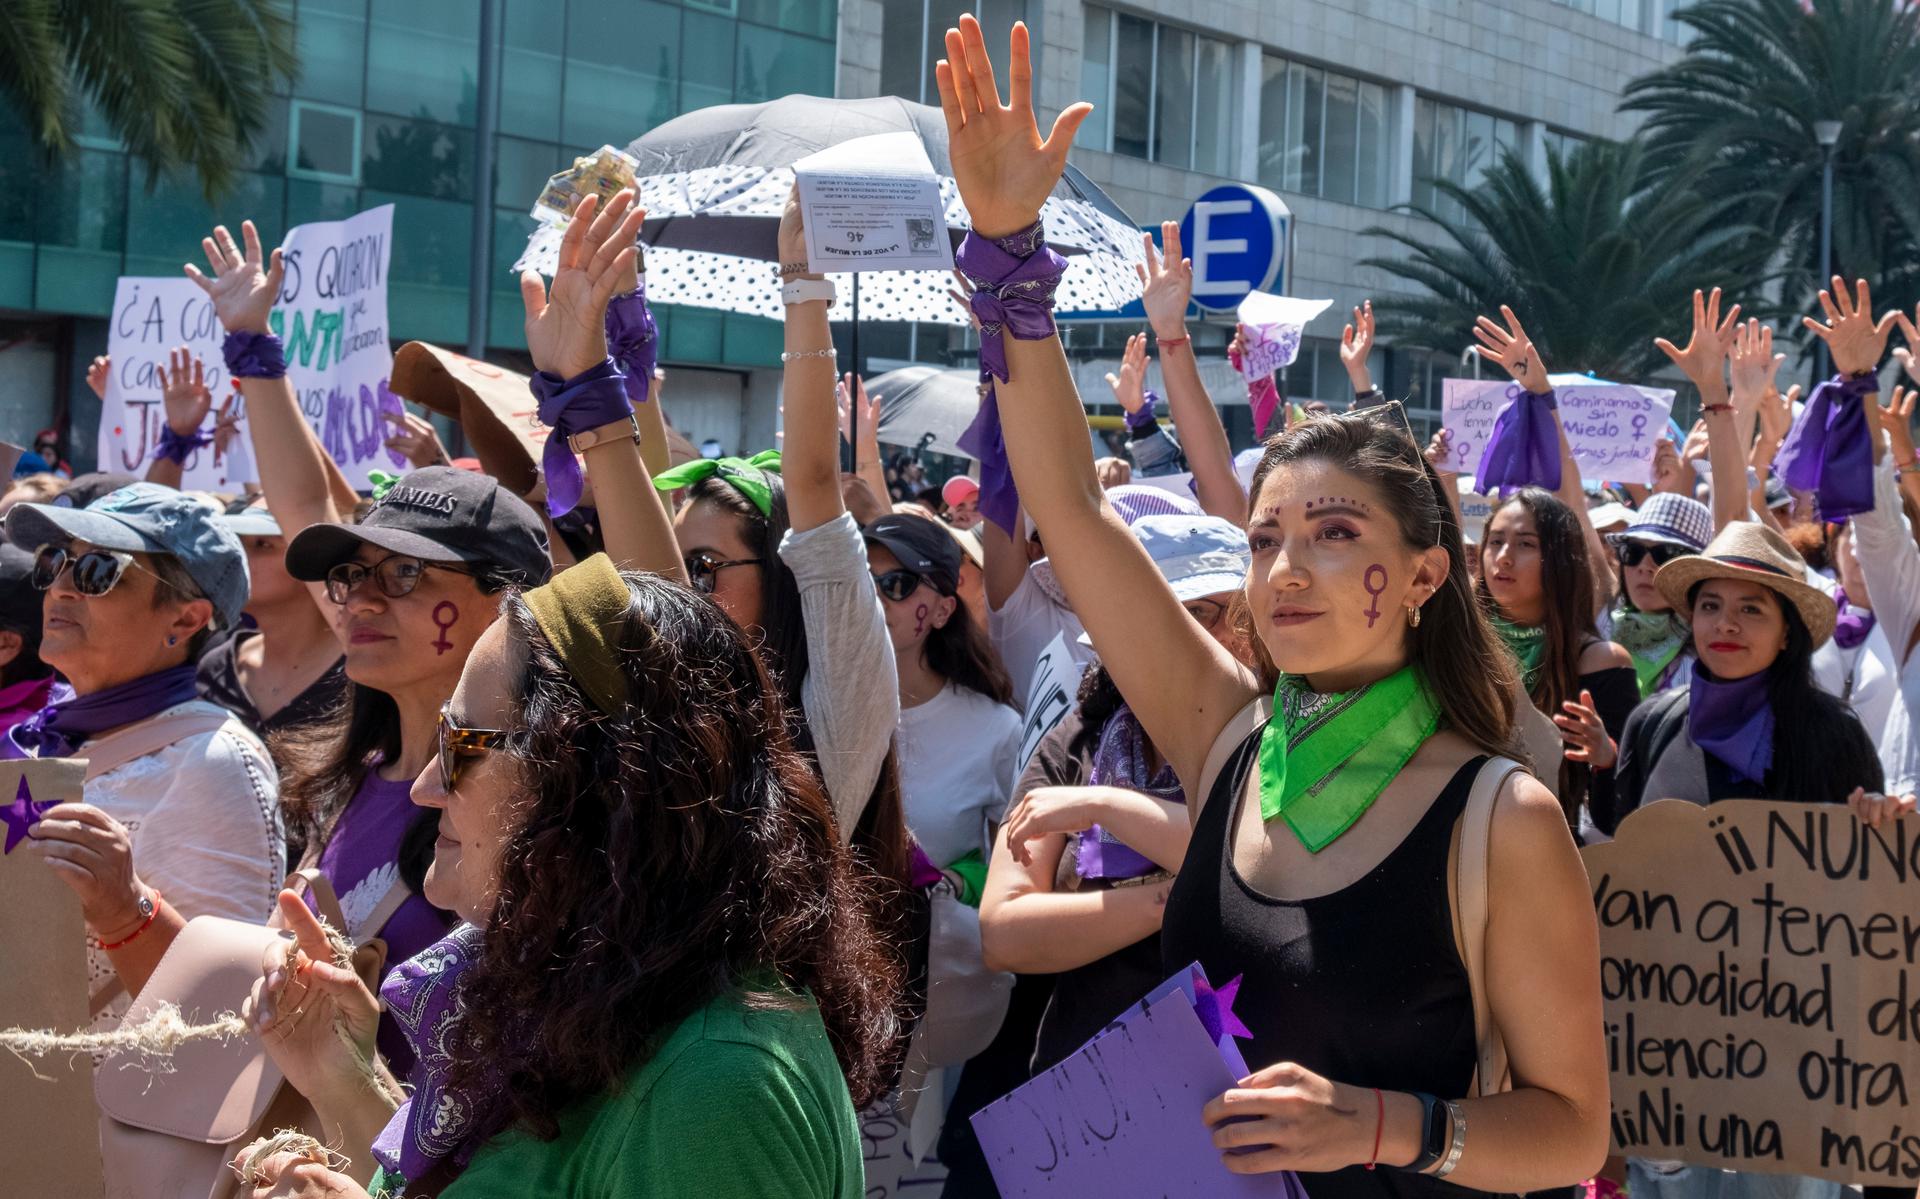 Vrouwen protesteren in Mexico tegen femicide. In Spaanstalige landen staat het probleem al langer hoog op de politieke agenda.